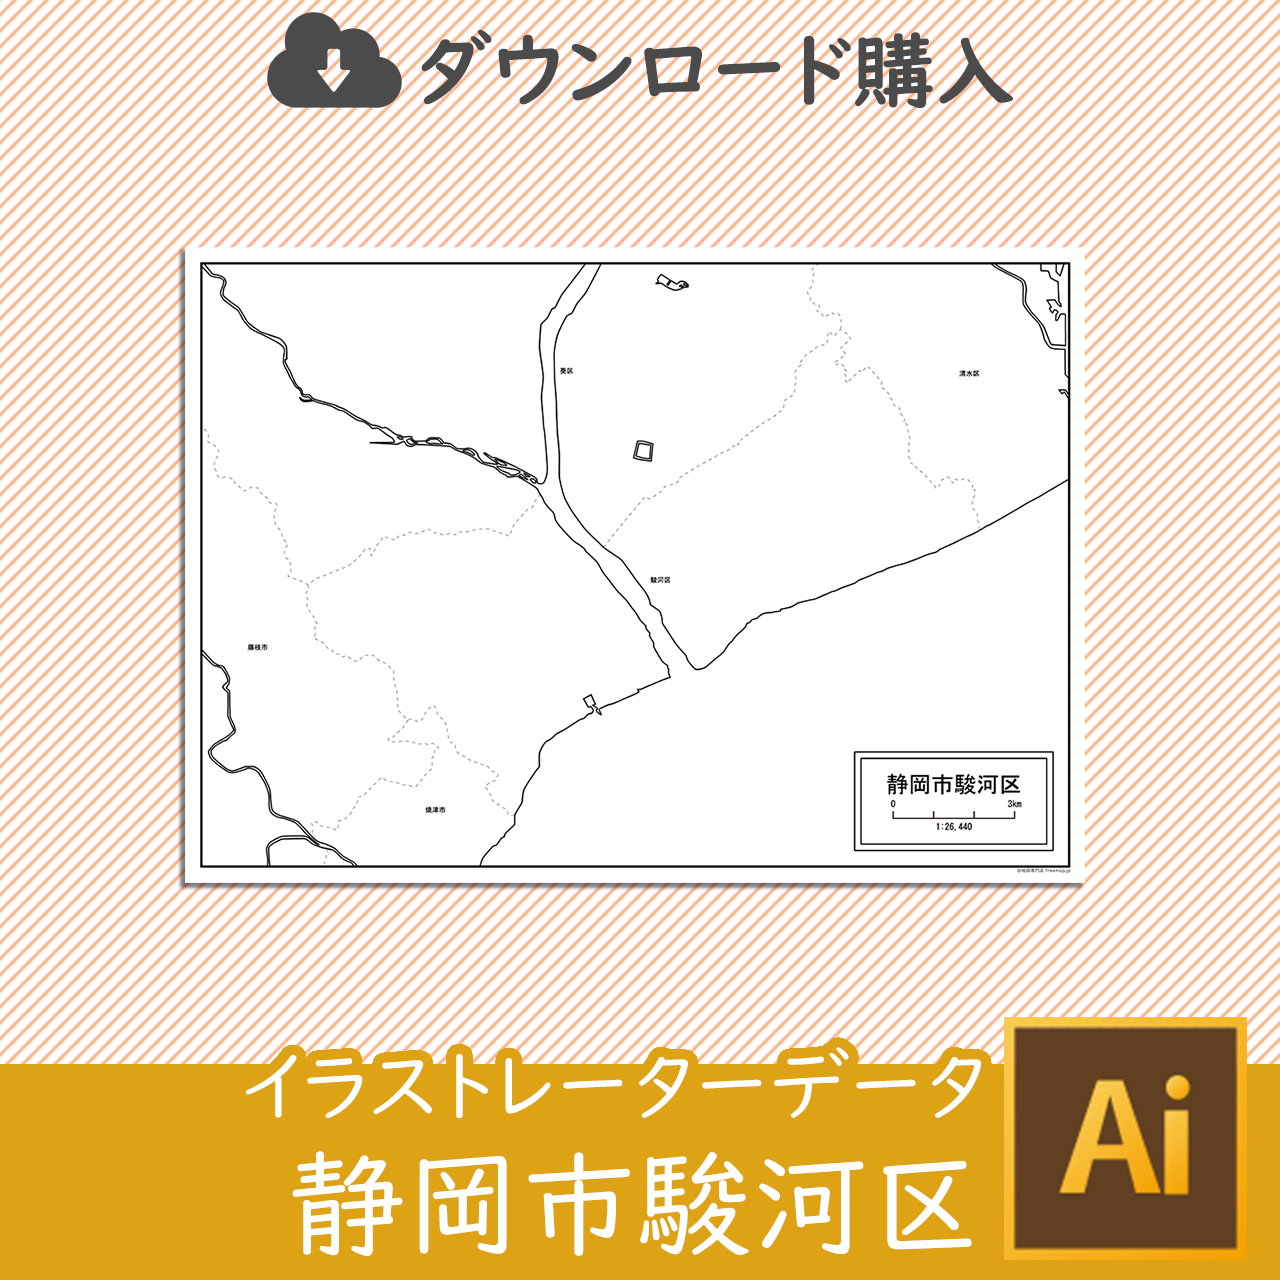 静岡市駿河区のaiデータのサムネイル画像